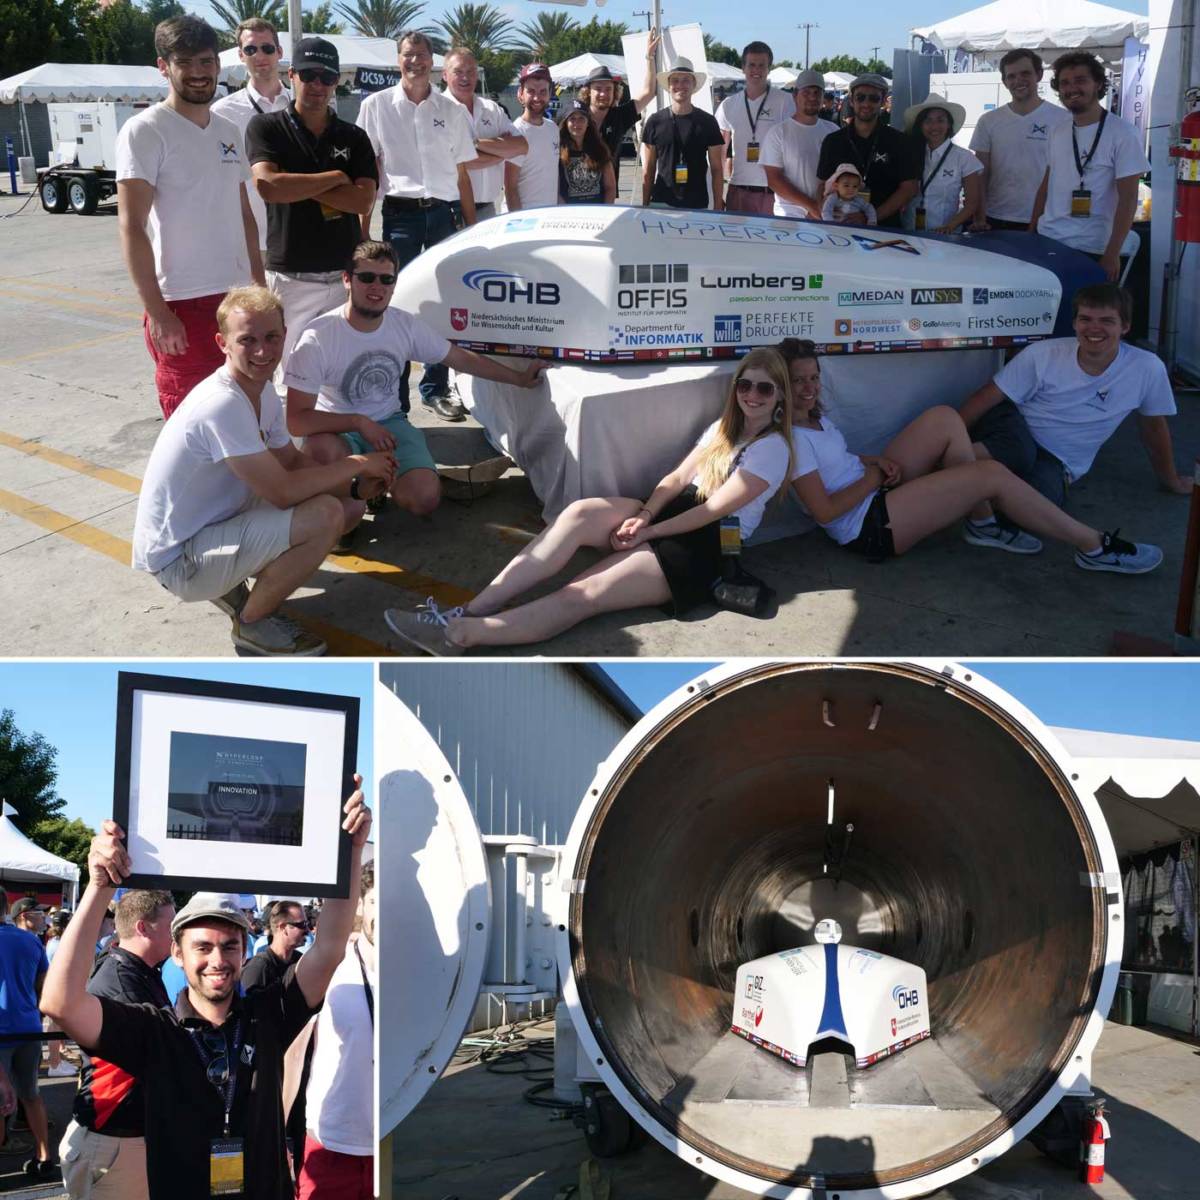 German SpaceX Hyperloop Team Photos from West LA 3D Printing in Los Angeles